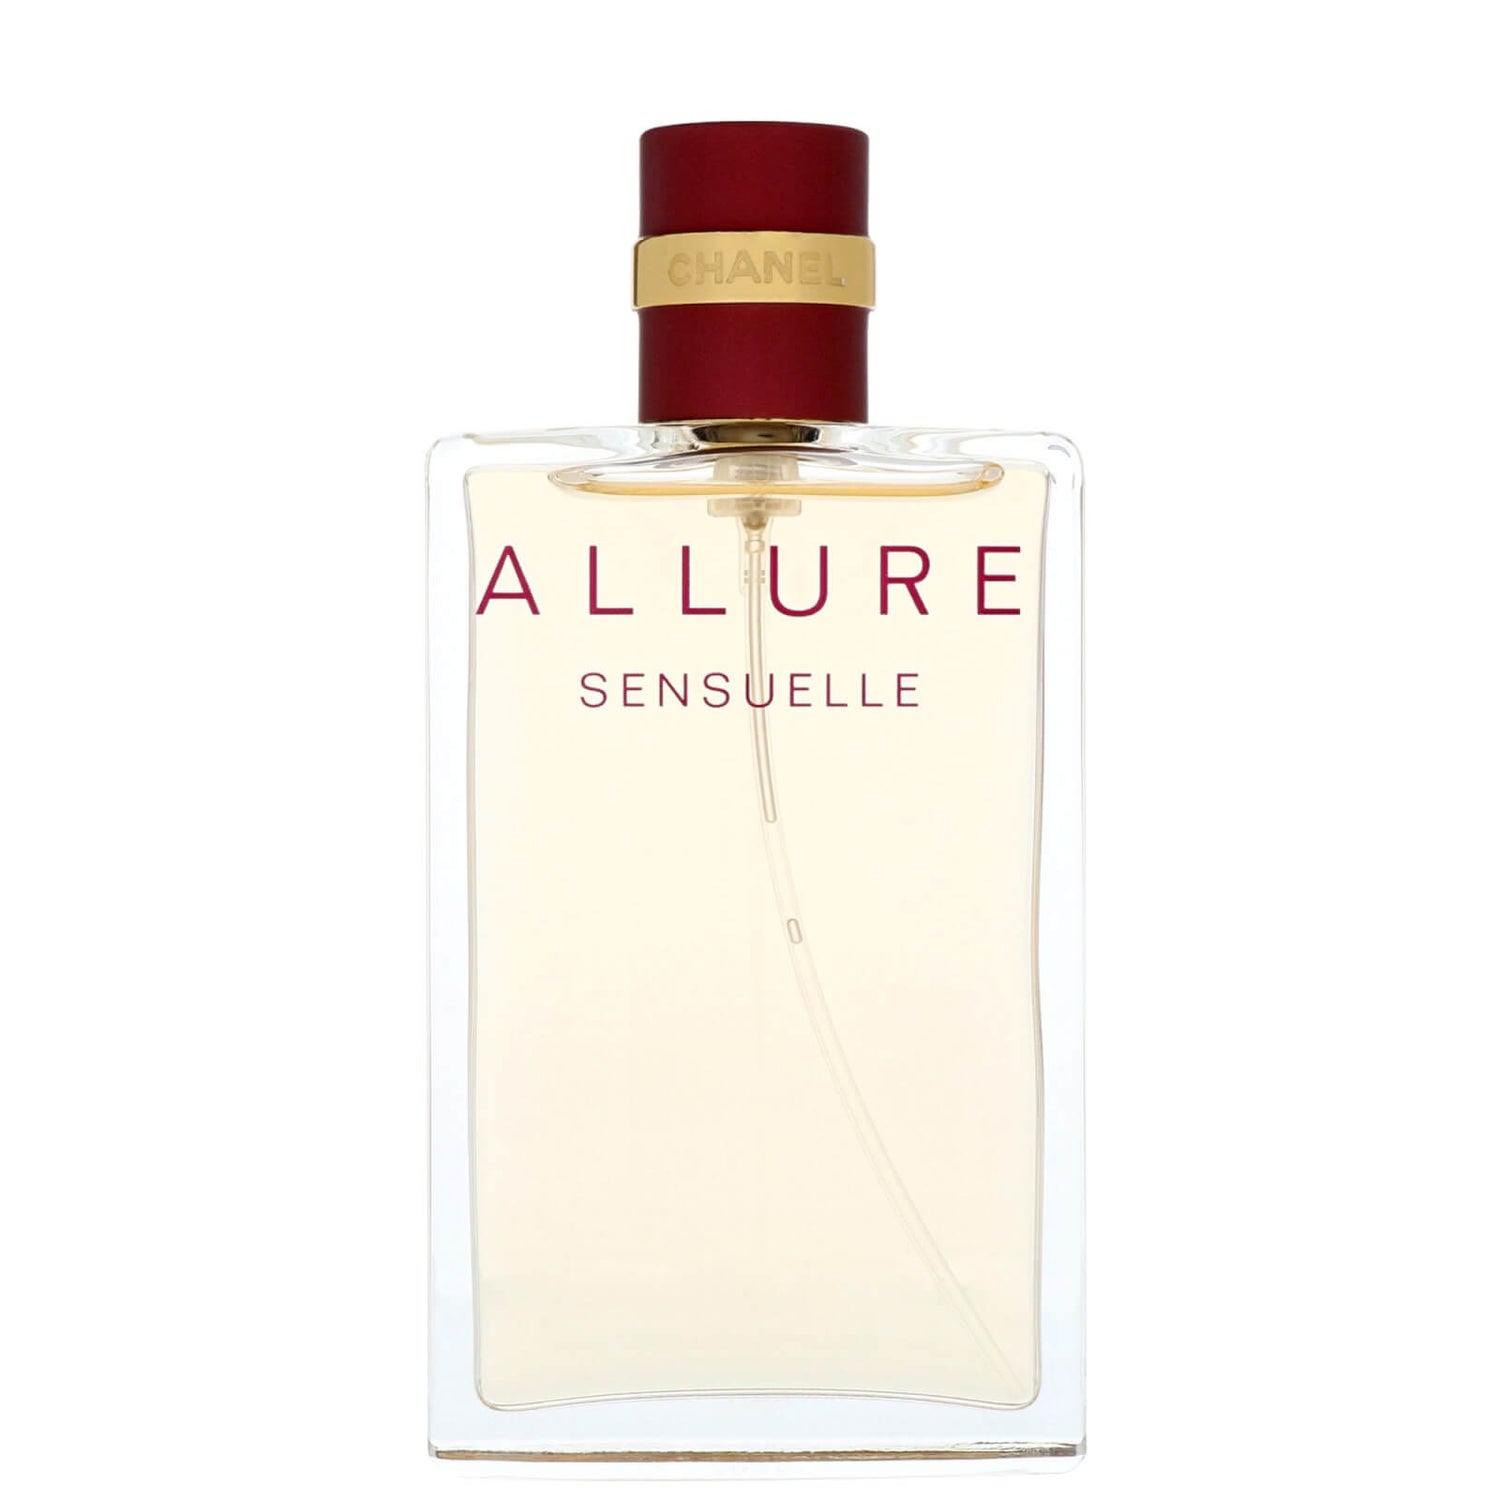 Chanel Allure Sensuelle Eau de Parfum Spray 50ml - allbeauty